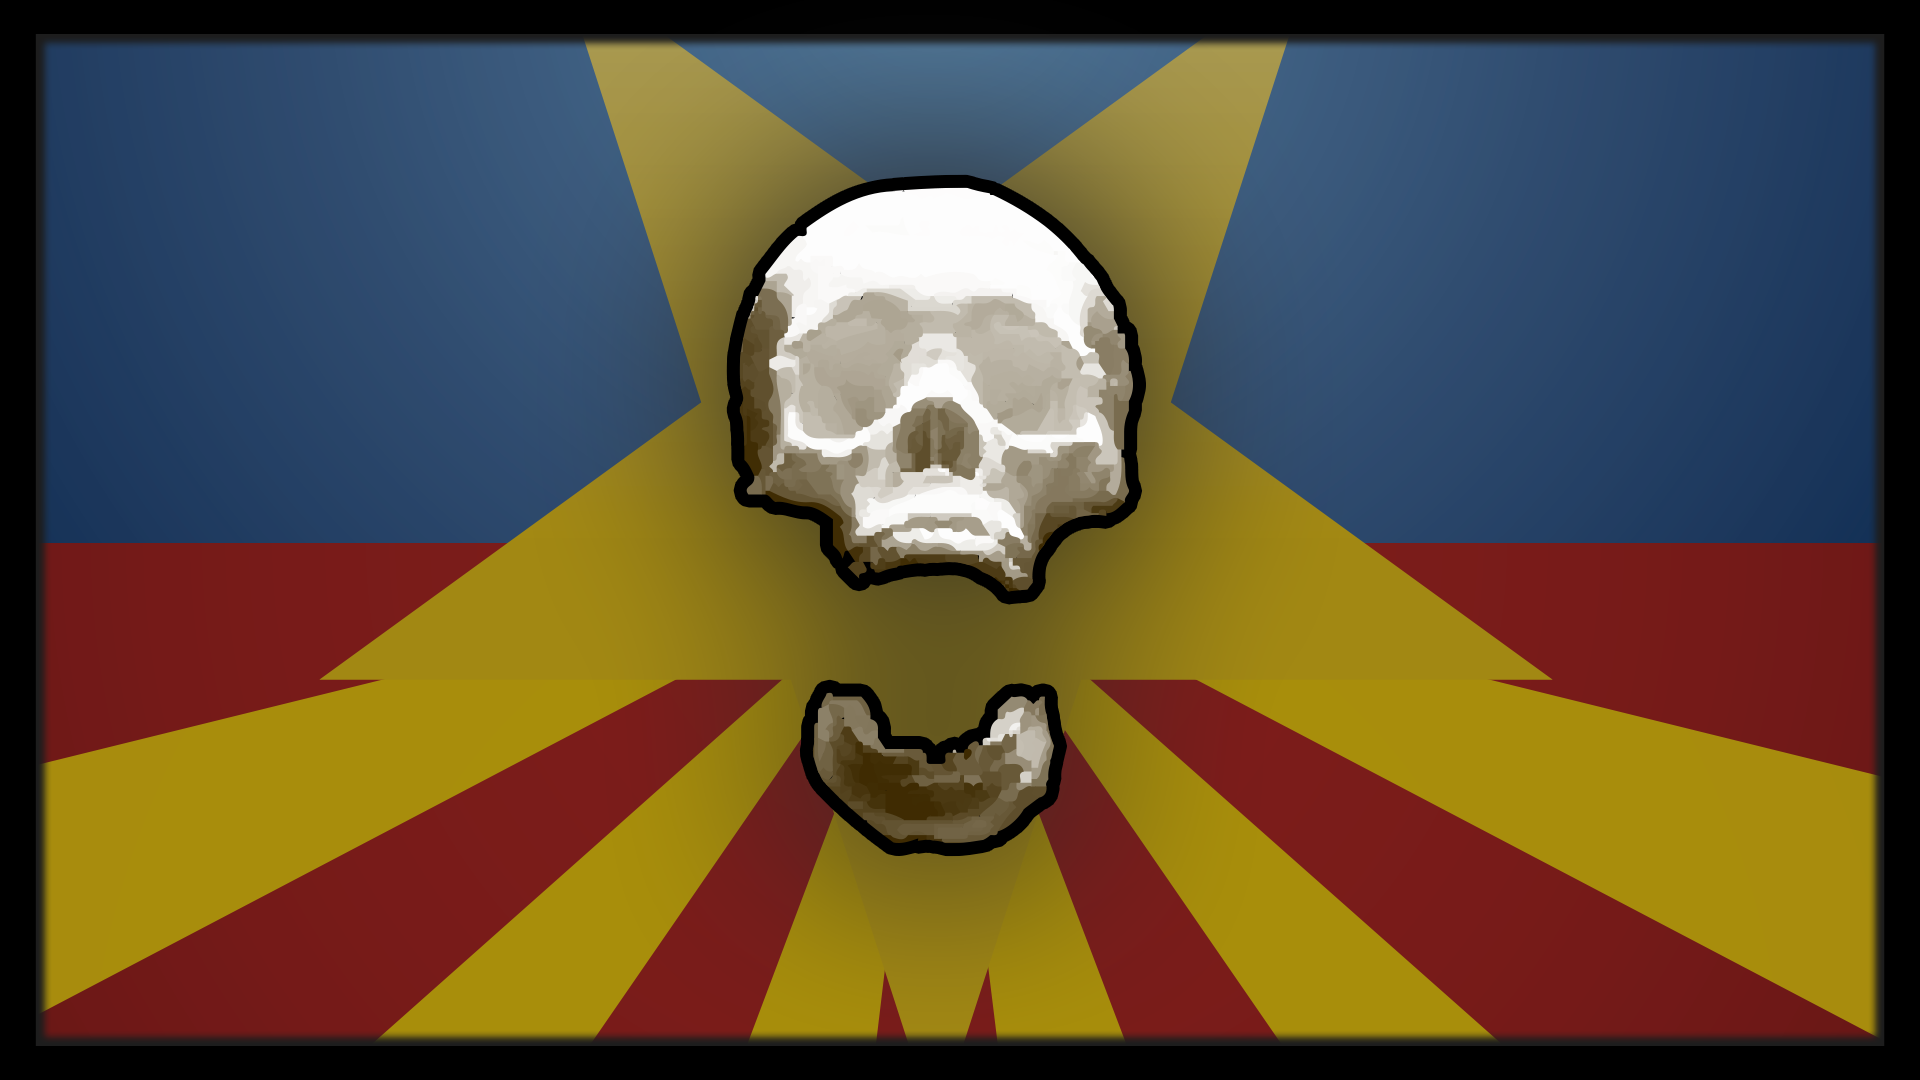 Icon for Skull Cracker